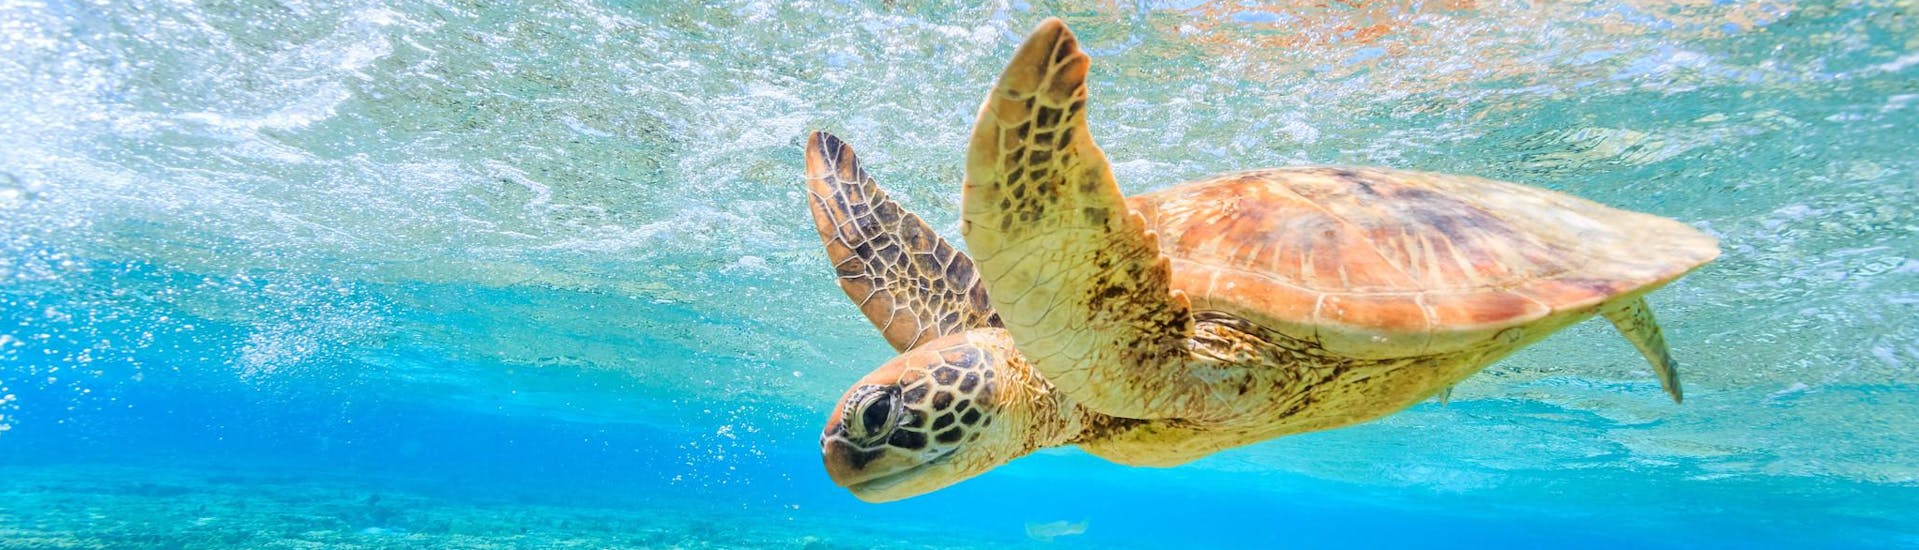 Schildkrötenbeobachtung mit Schwimmen über dem Riff